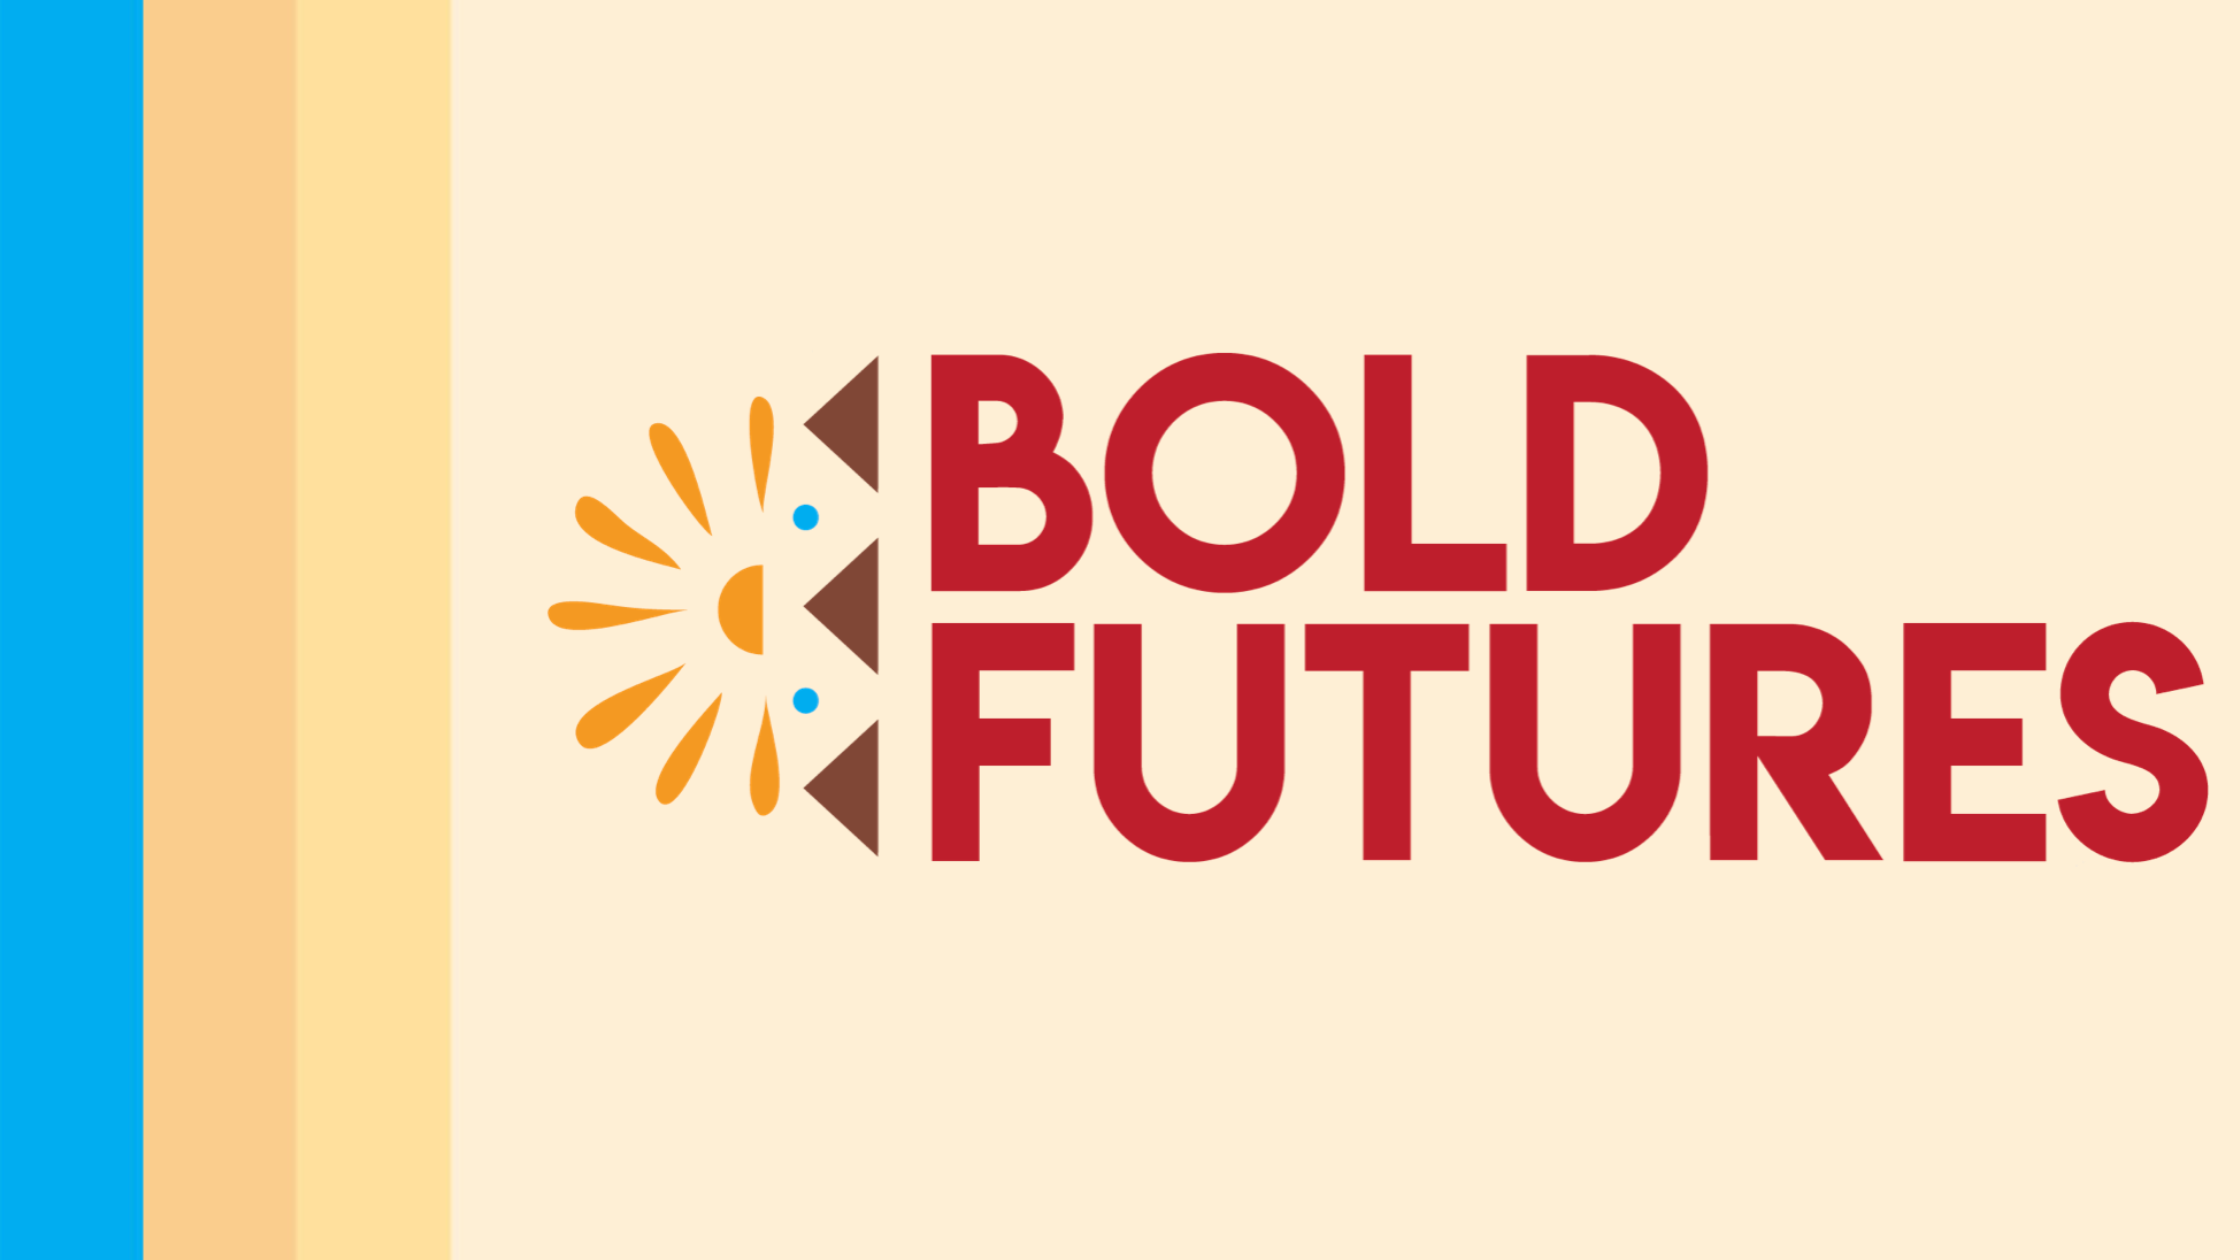 Bold Futures